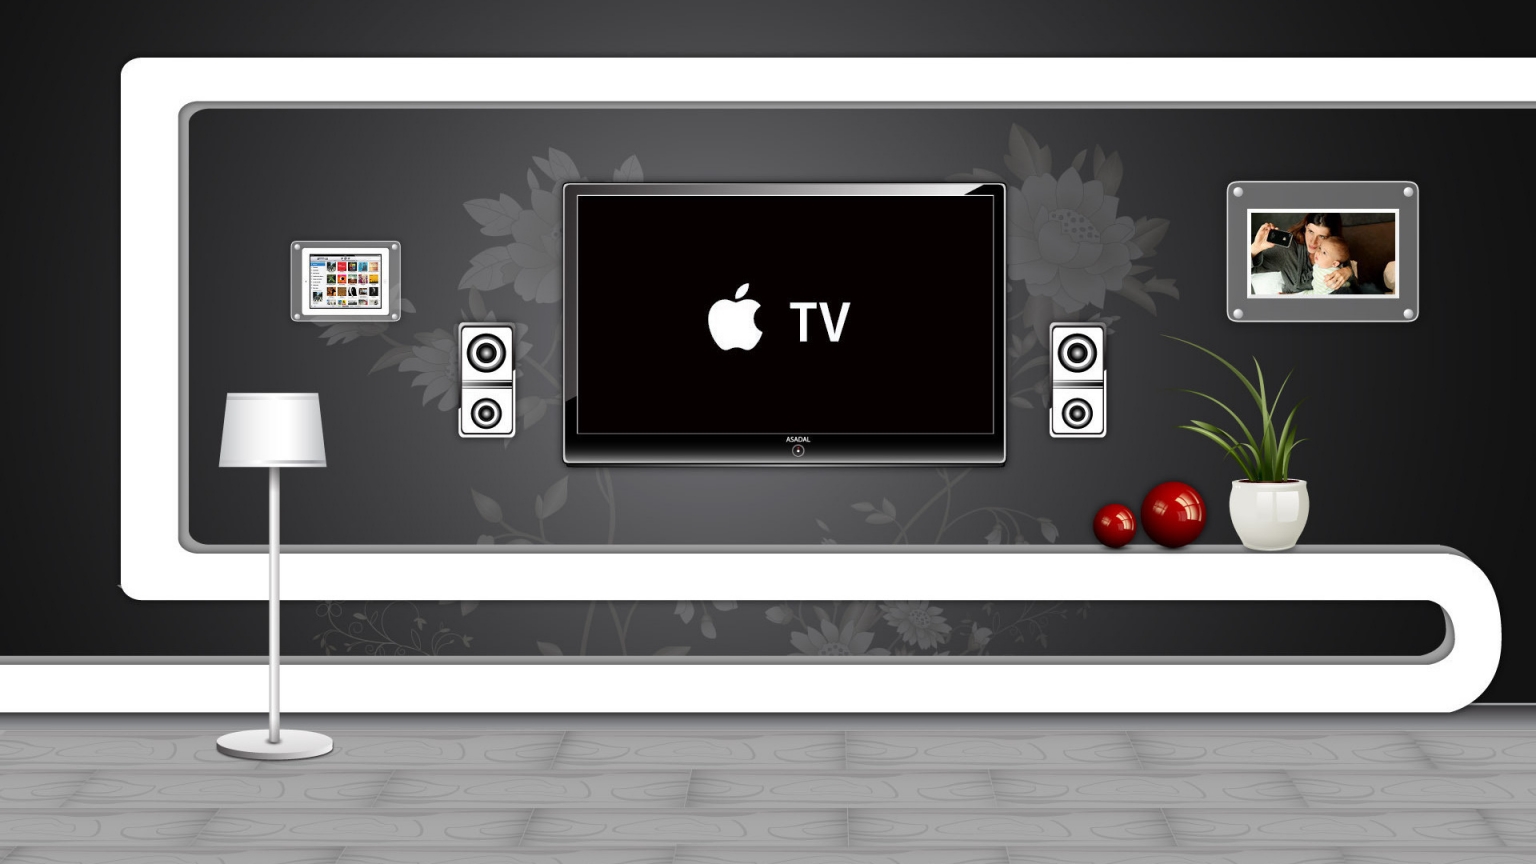 Apple TV for 1536 x 864 HDTV resolution